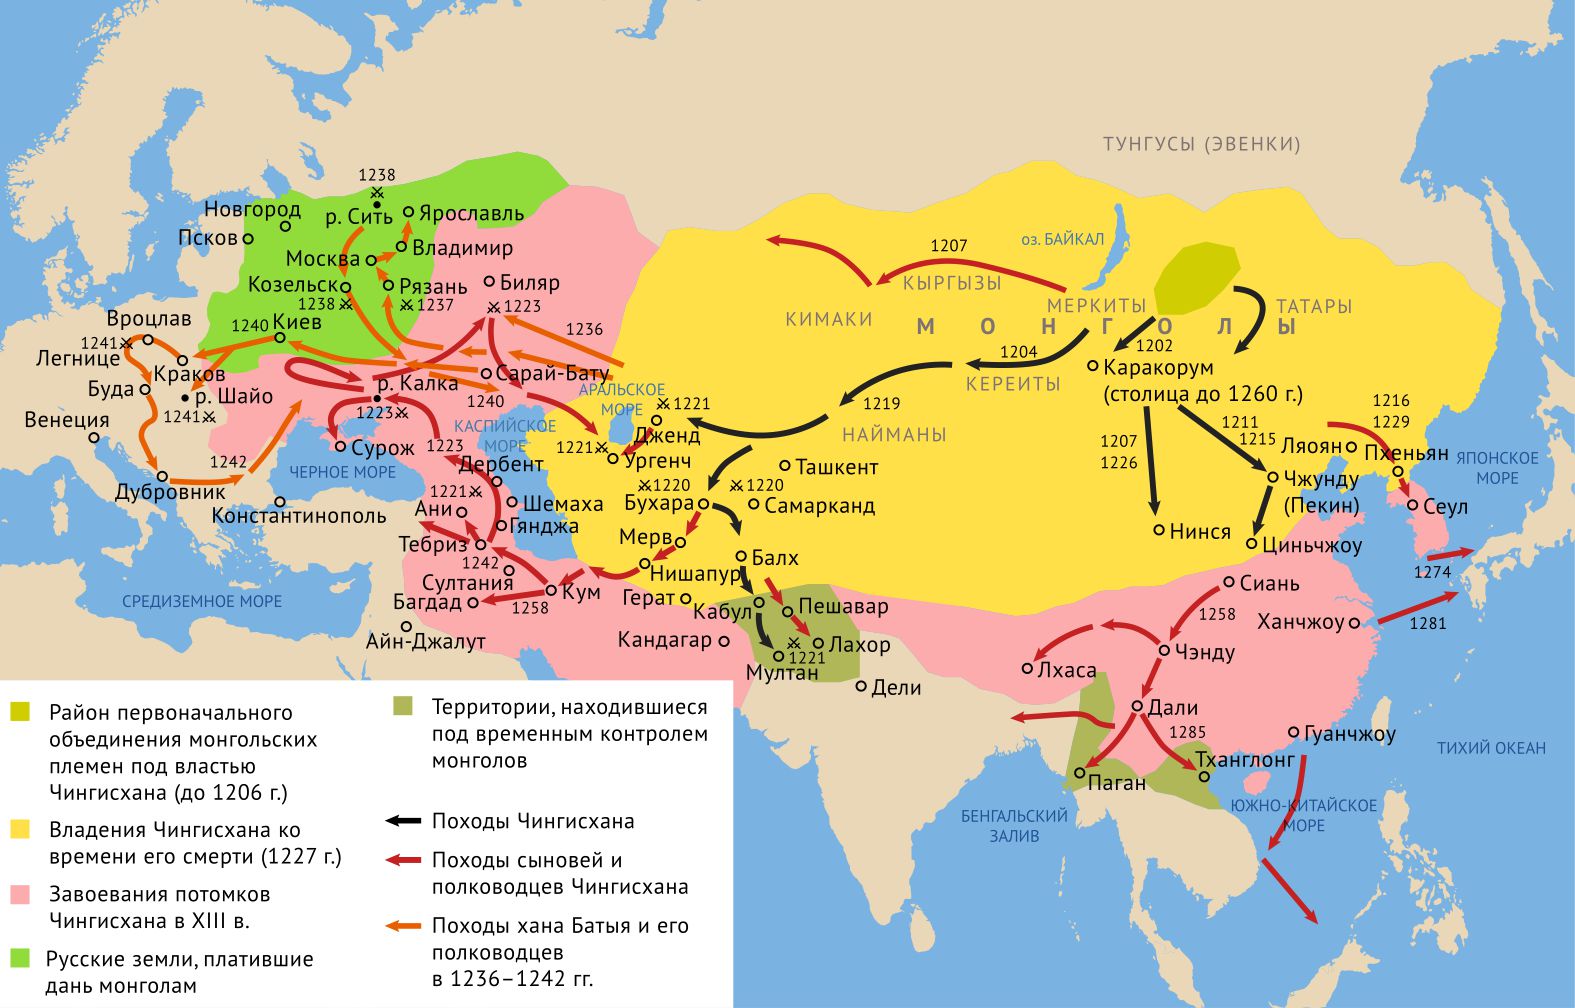 Завоевание монголов 13 век_испр.jpg